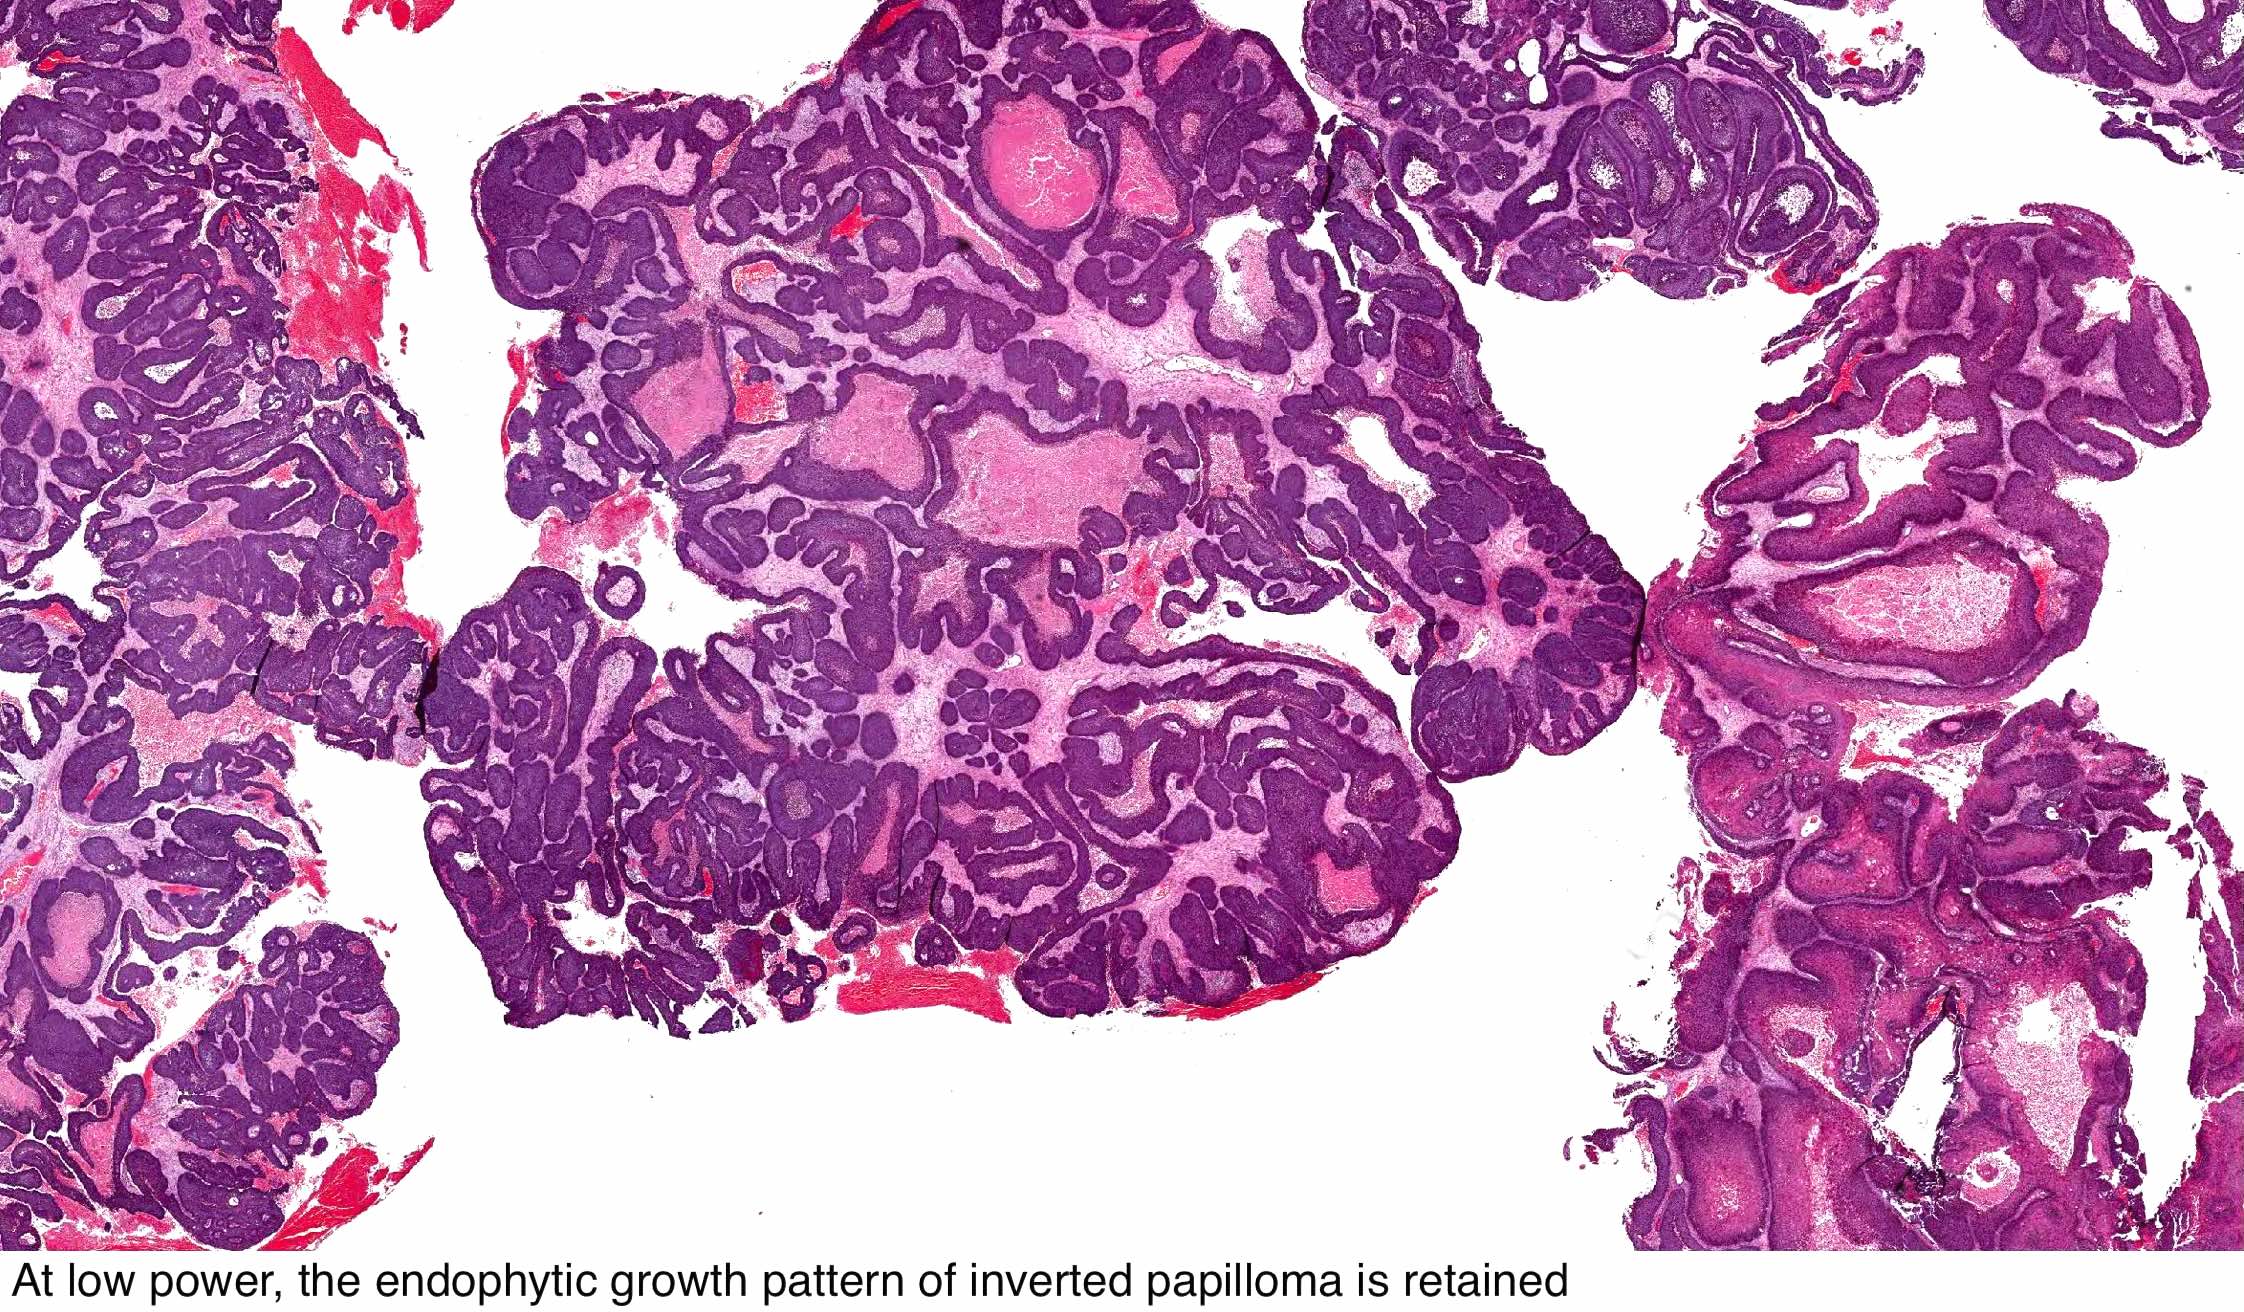 Hpv petefészekdaganat A 4 leggyakoribb rosszindulatú nőgyógyászati daganat